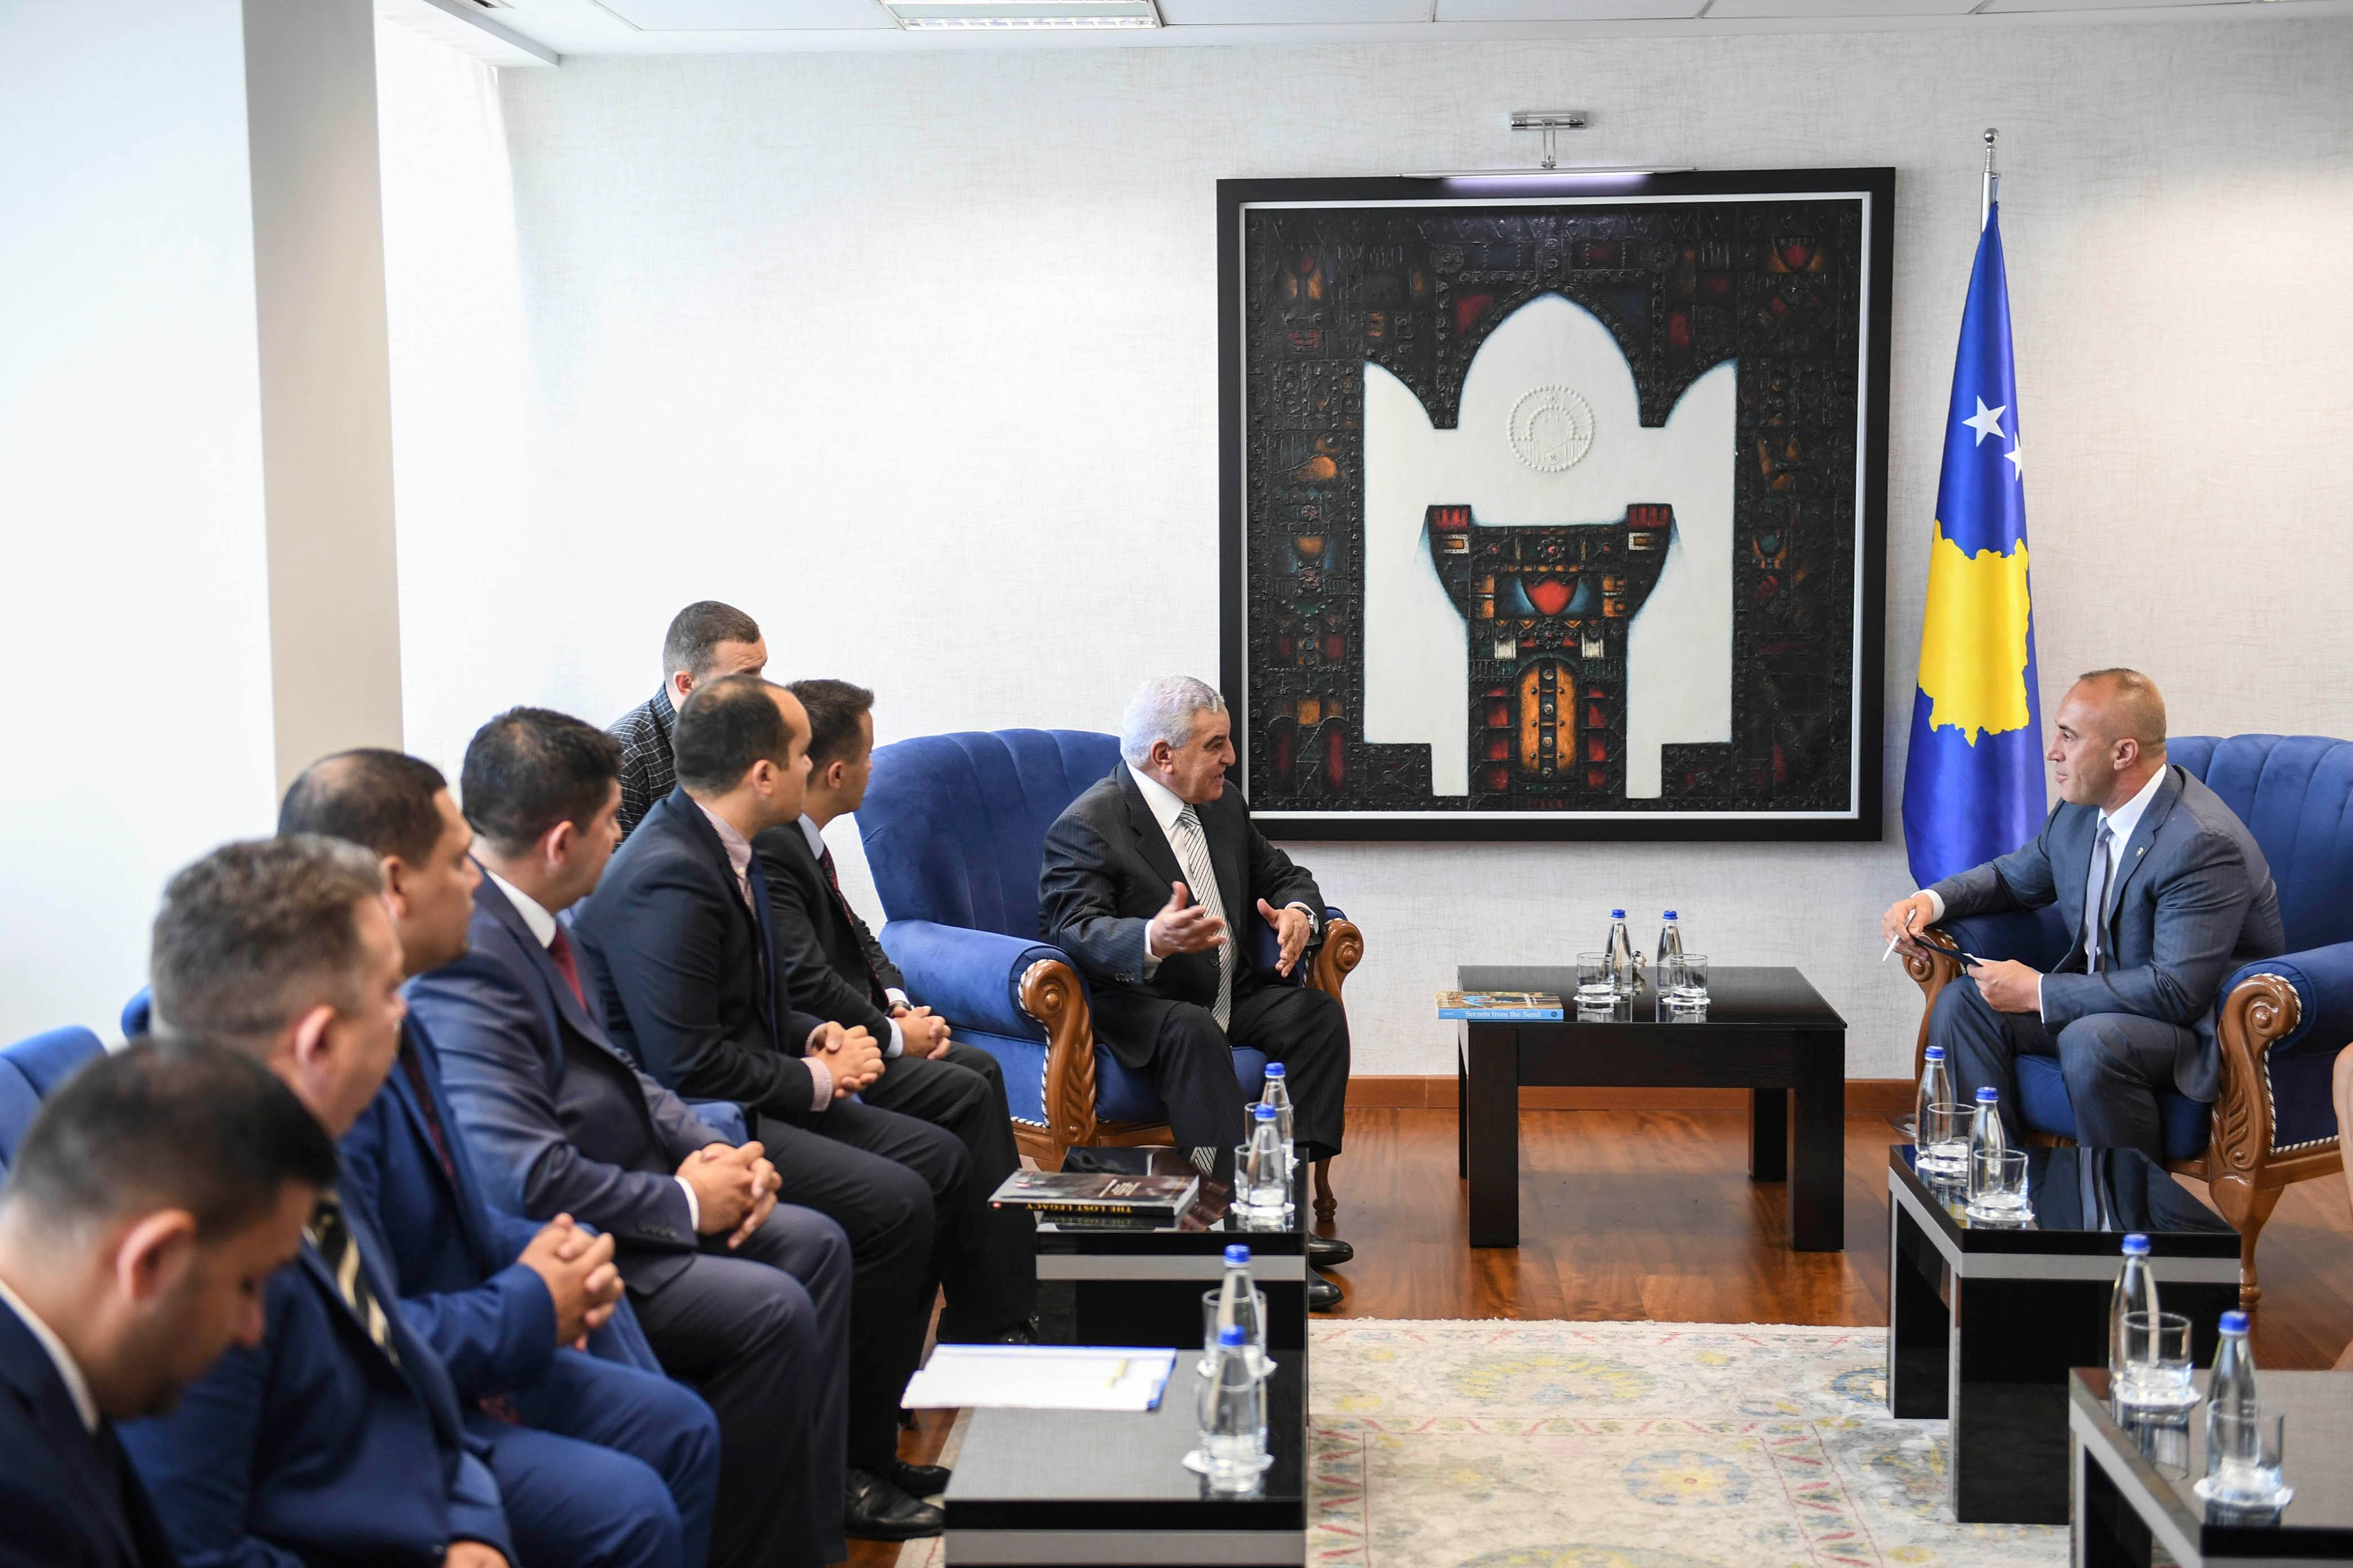 رئيس وزراء كوسوفو يهدى زاهى حواس شعار الدولة  (3)